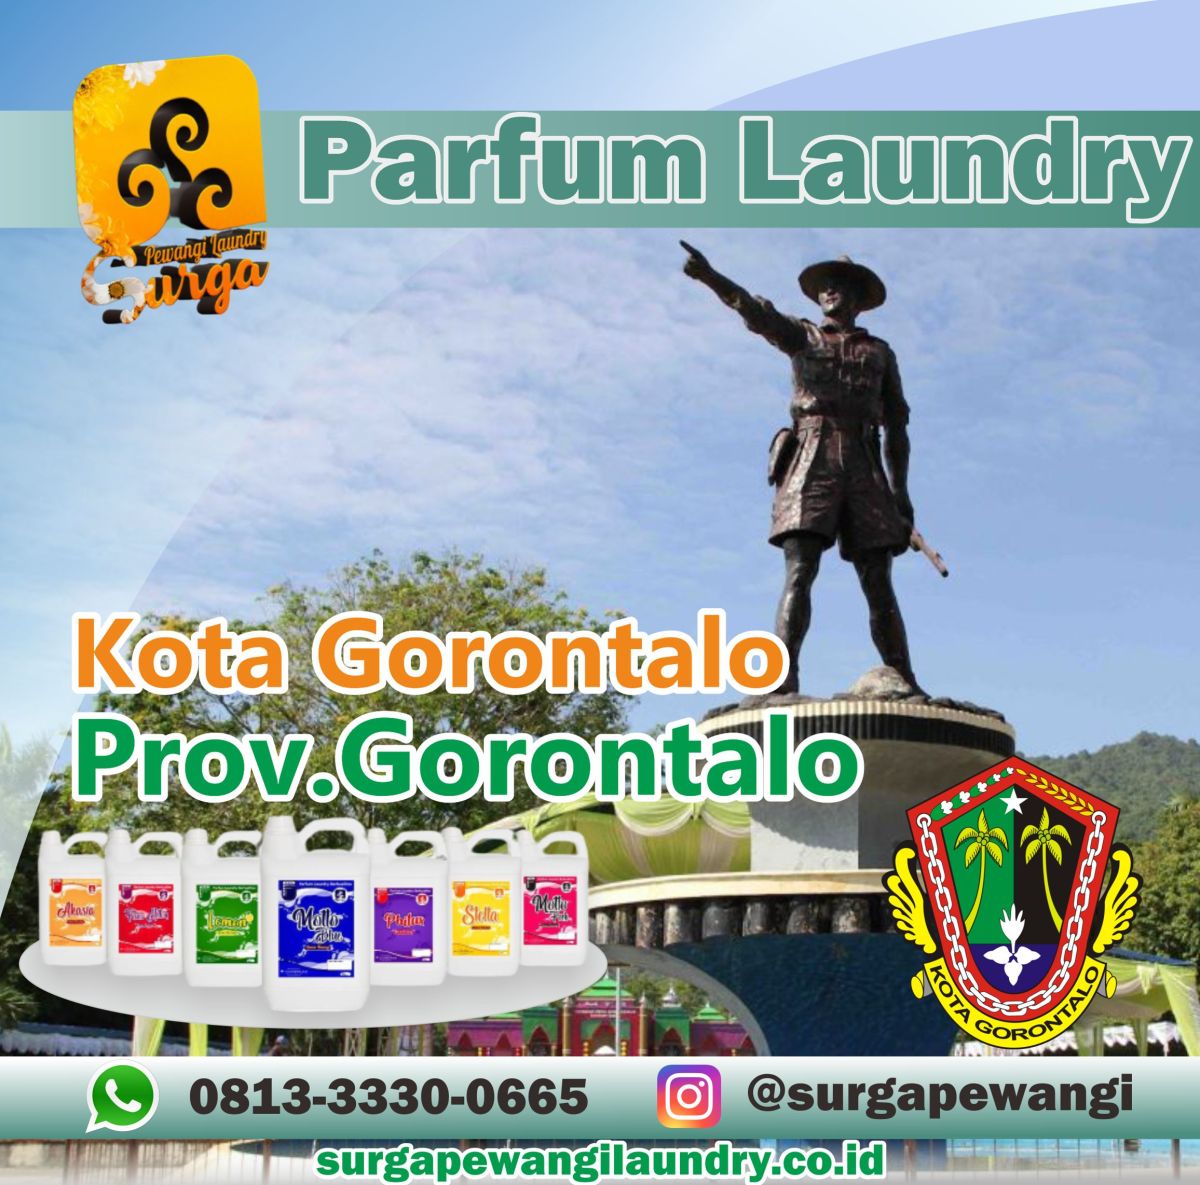 Parfum Laundry Kota Gorontalo